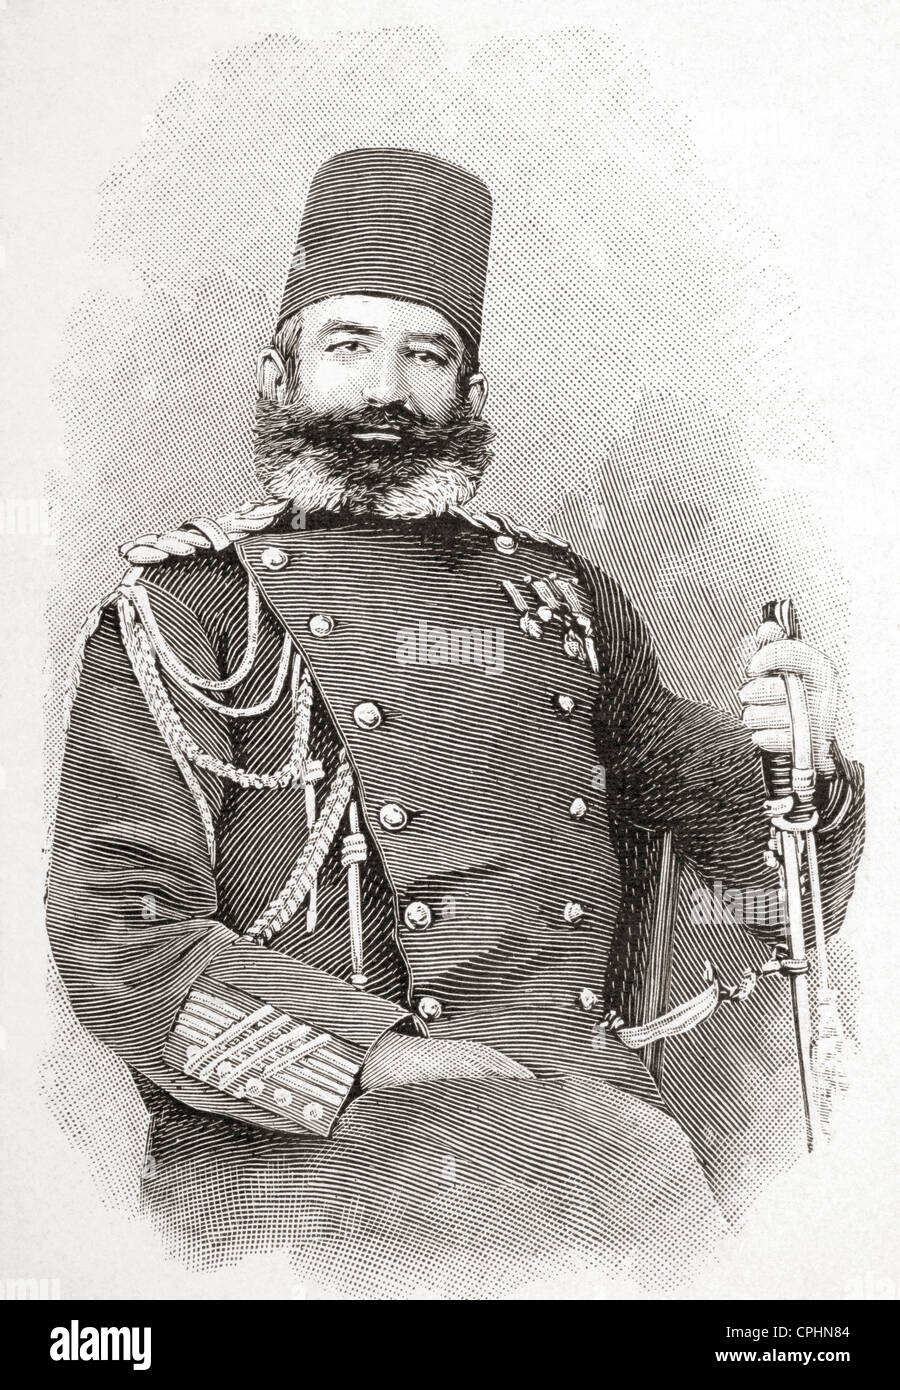 Edhem Pascha, 1851-1909. Osmanische Kommandant während Greco-türkischer Krieg von 1897. Von l ' Illustration veröffentlicht 1897. Stockfoto